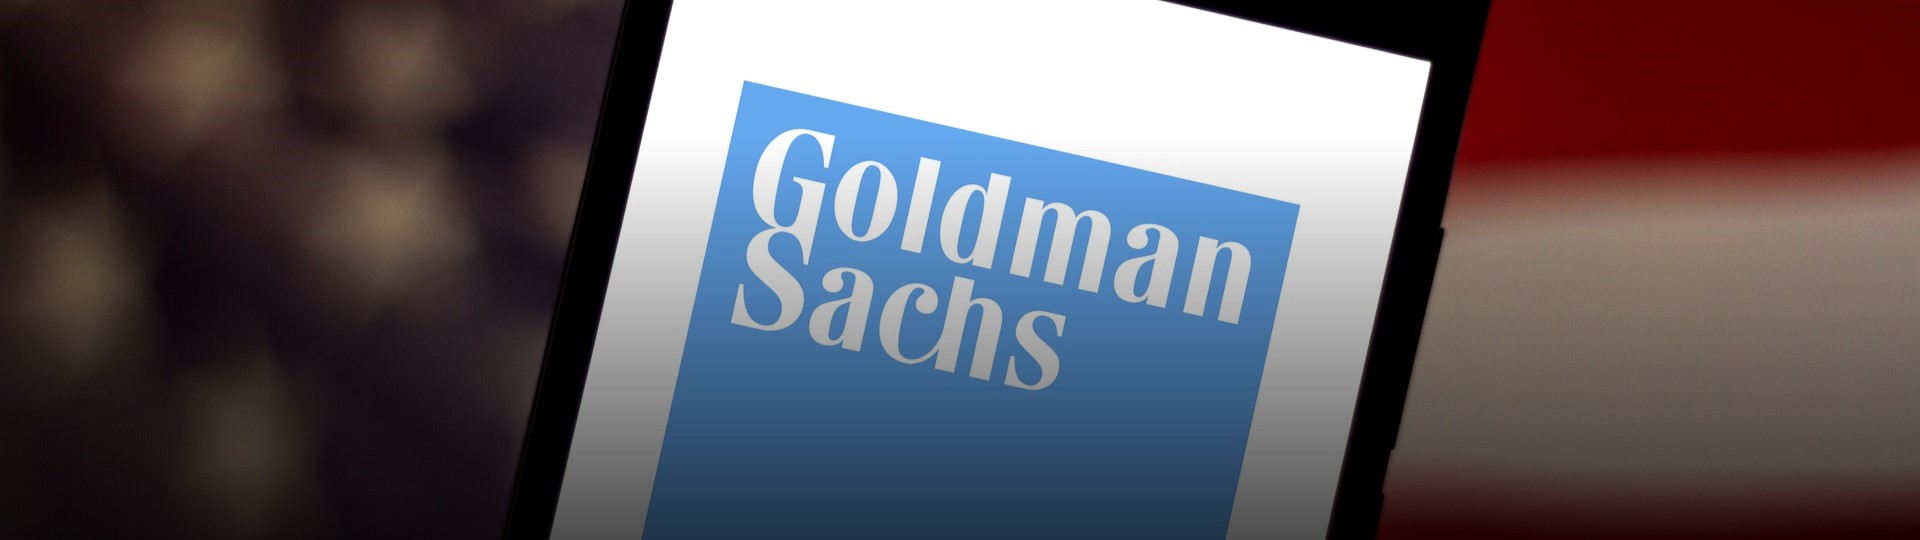 Goldman Sachs zaměstná na vyšších pozicích více žen